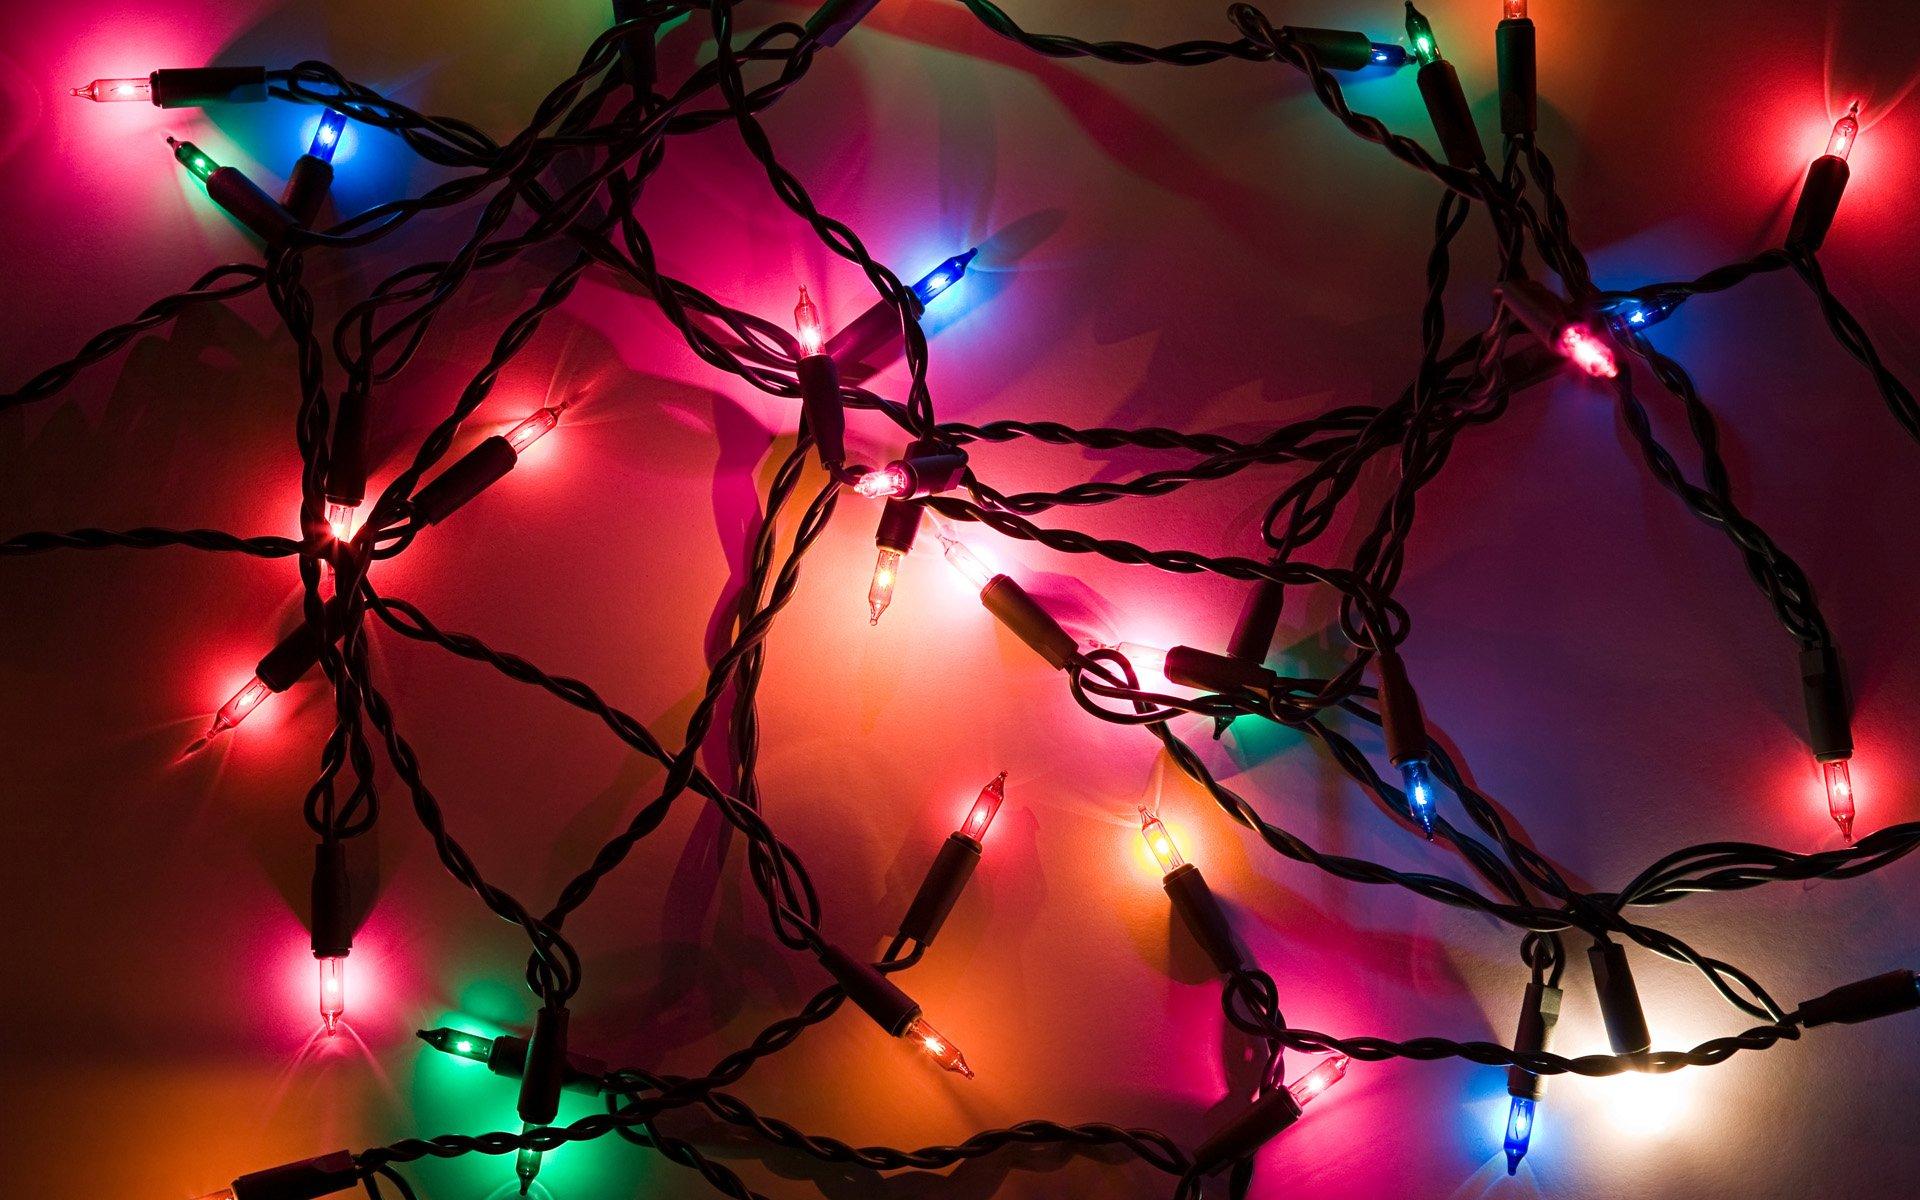 Christmas Lights 4k Wallpapers - Top Free Christmas Lights 4k ...